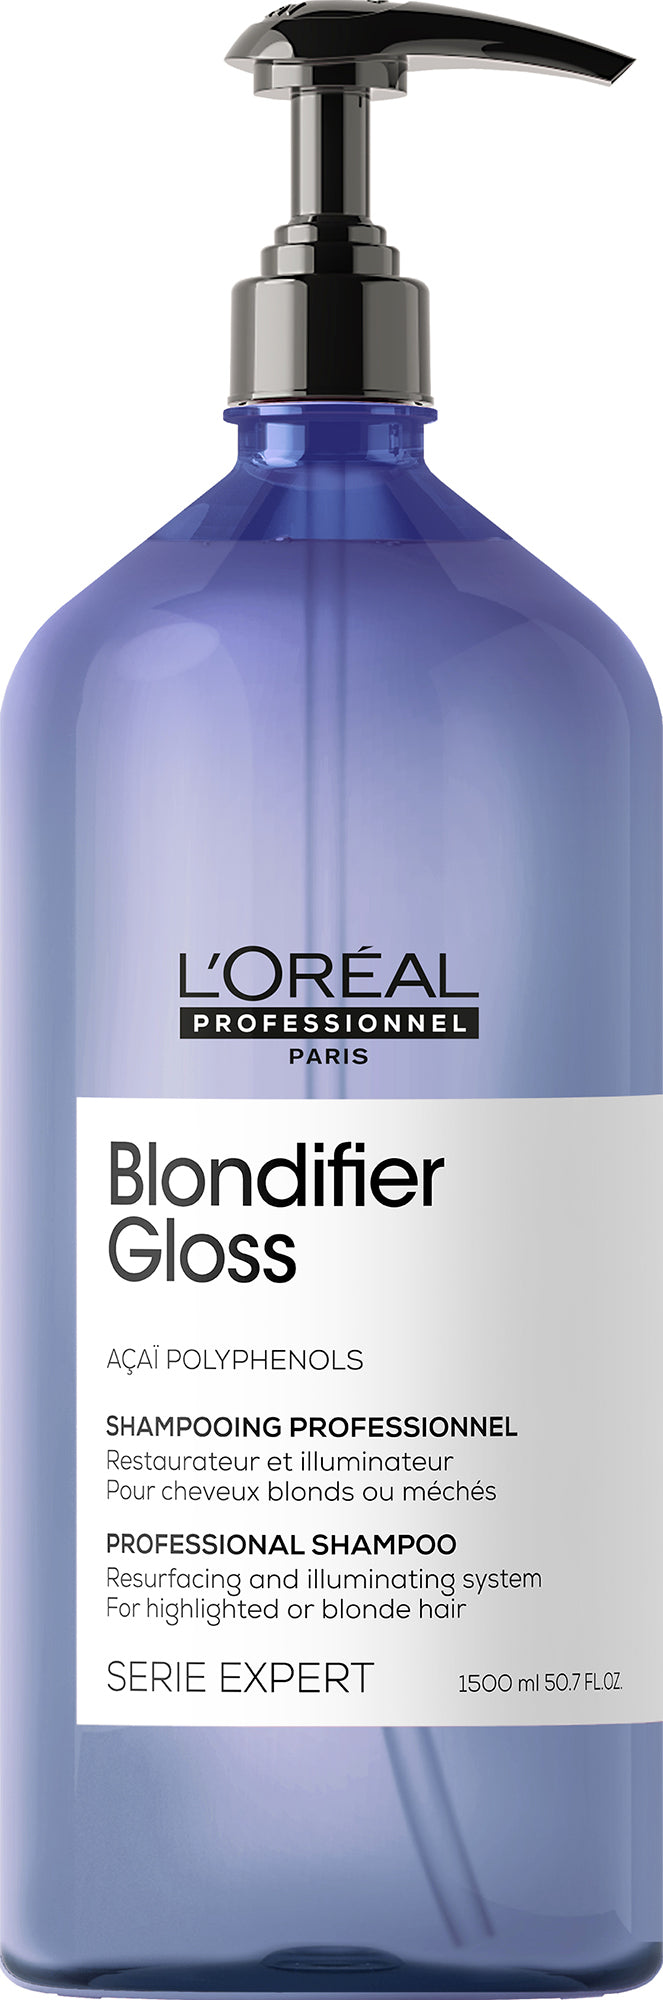 Sham LP Blondifier Gloss 1500ml